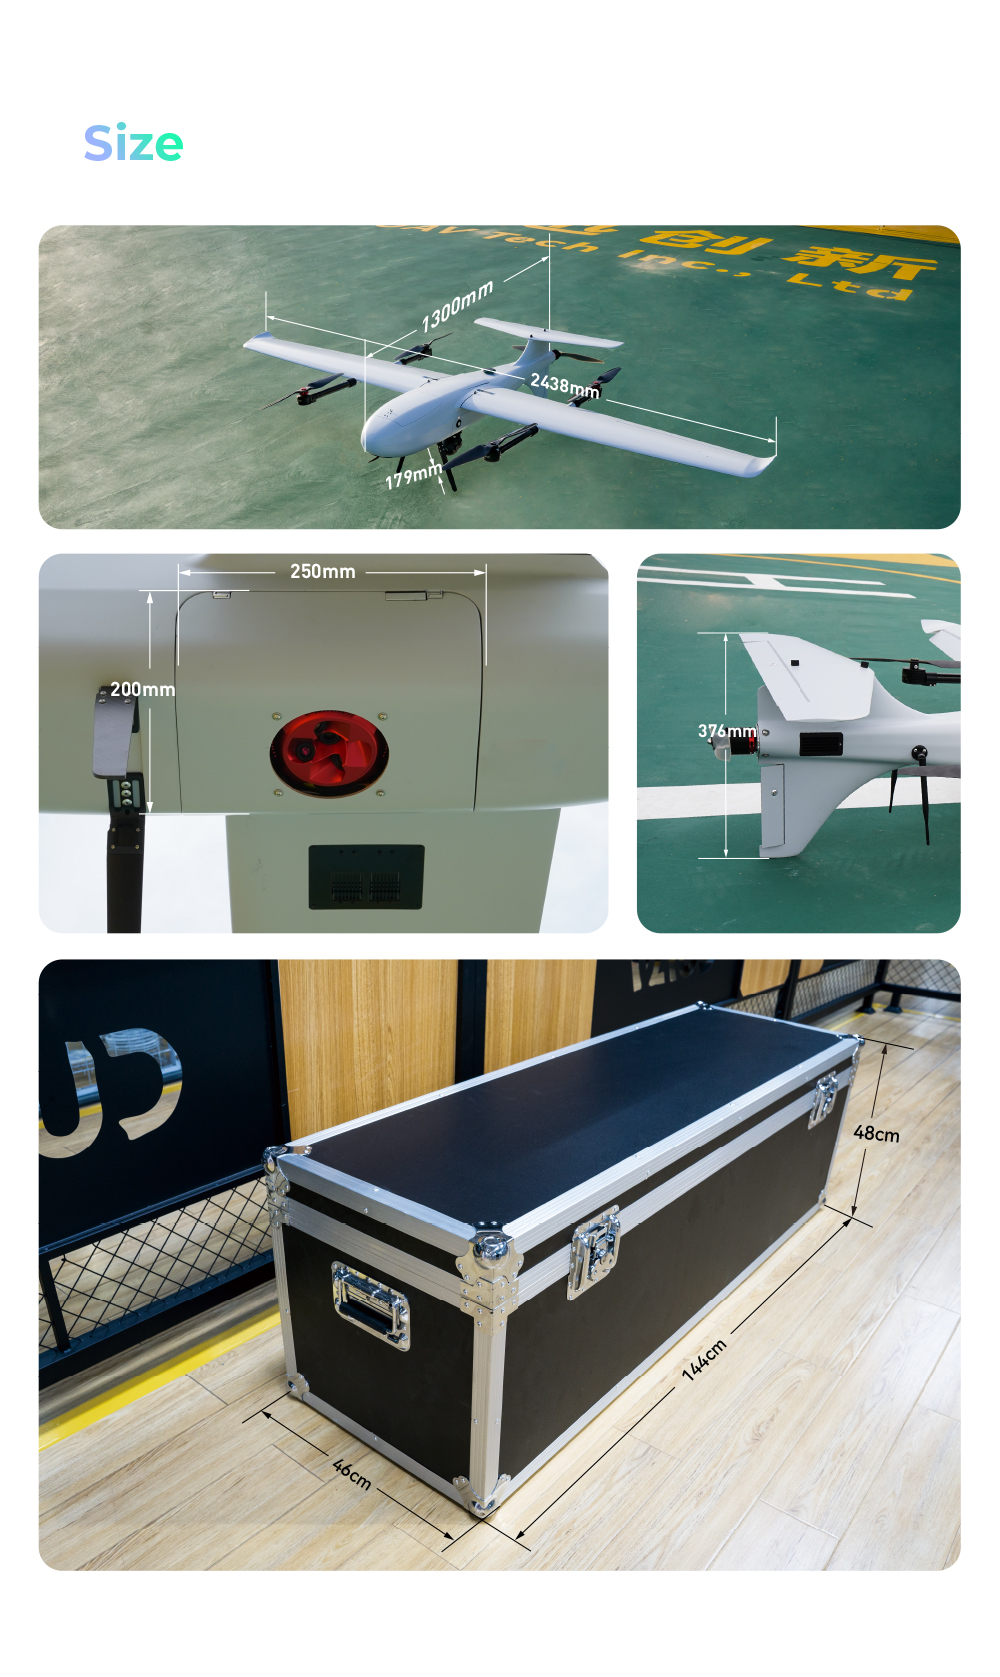 CUAV Raefly VT240 pro VTOL Specifications Body Material: